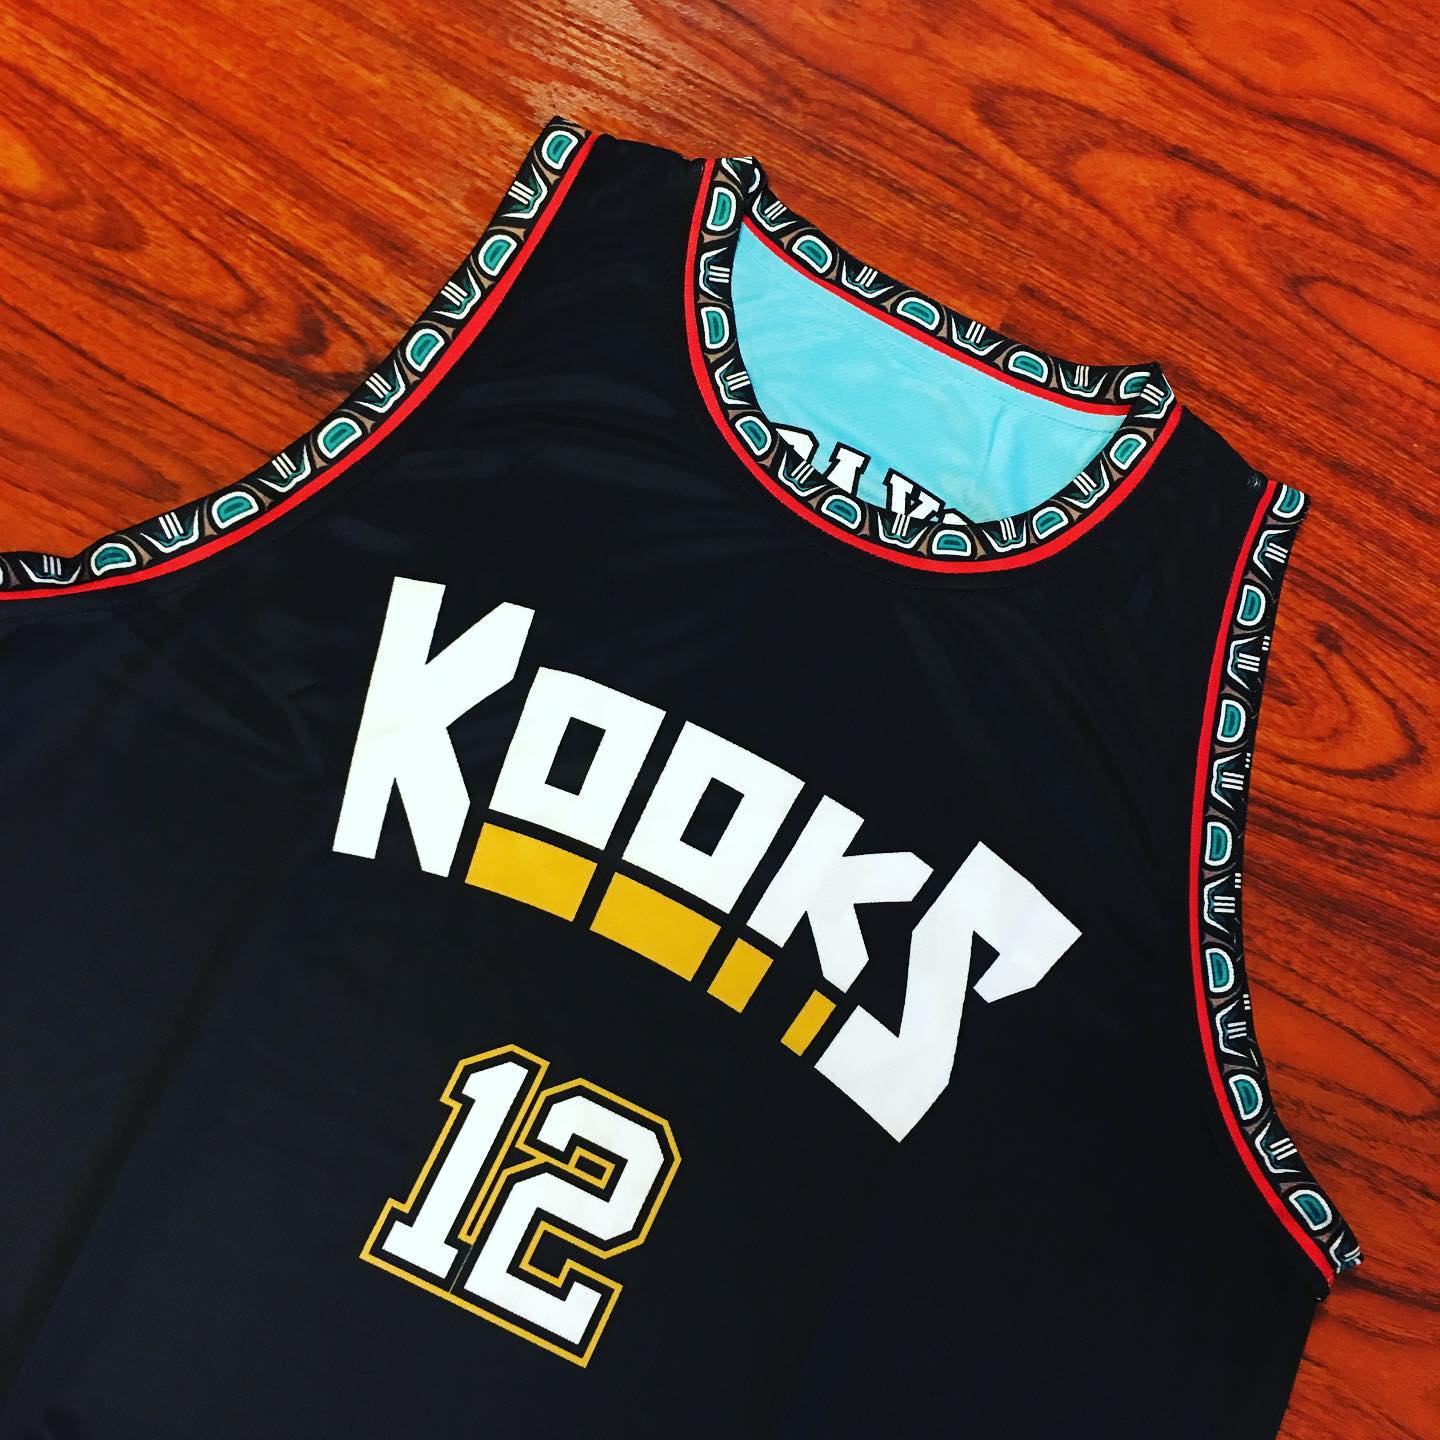 Grizzlies Memphis 2020 Basketball Jersey Designs  Jersey design, Basketball  jersey, Hype clothing